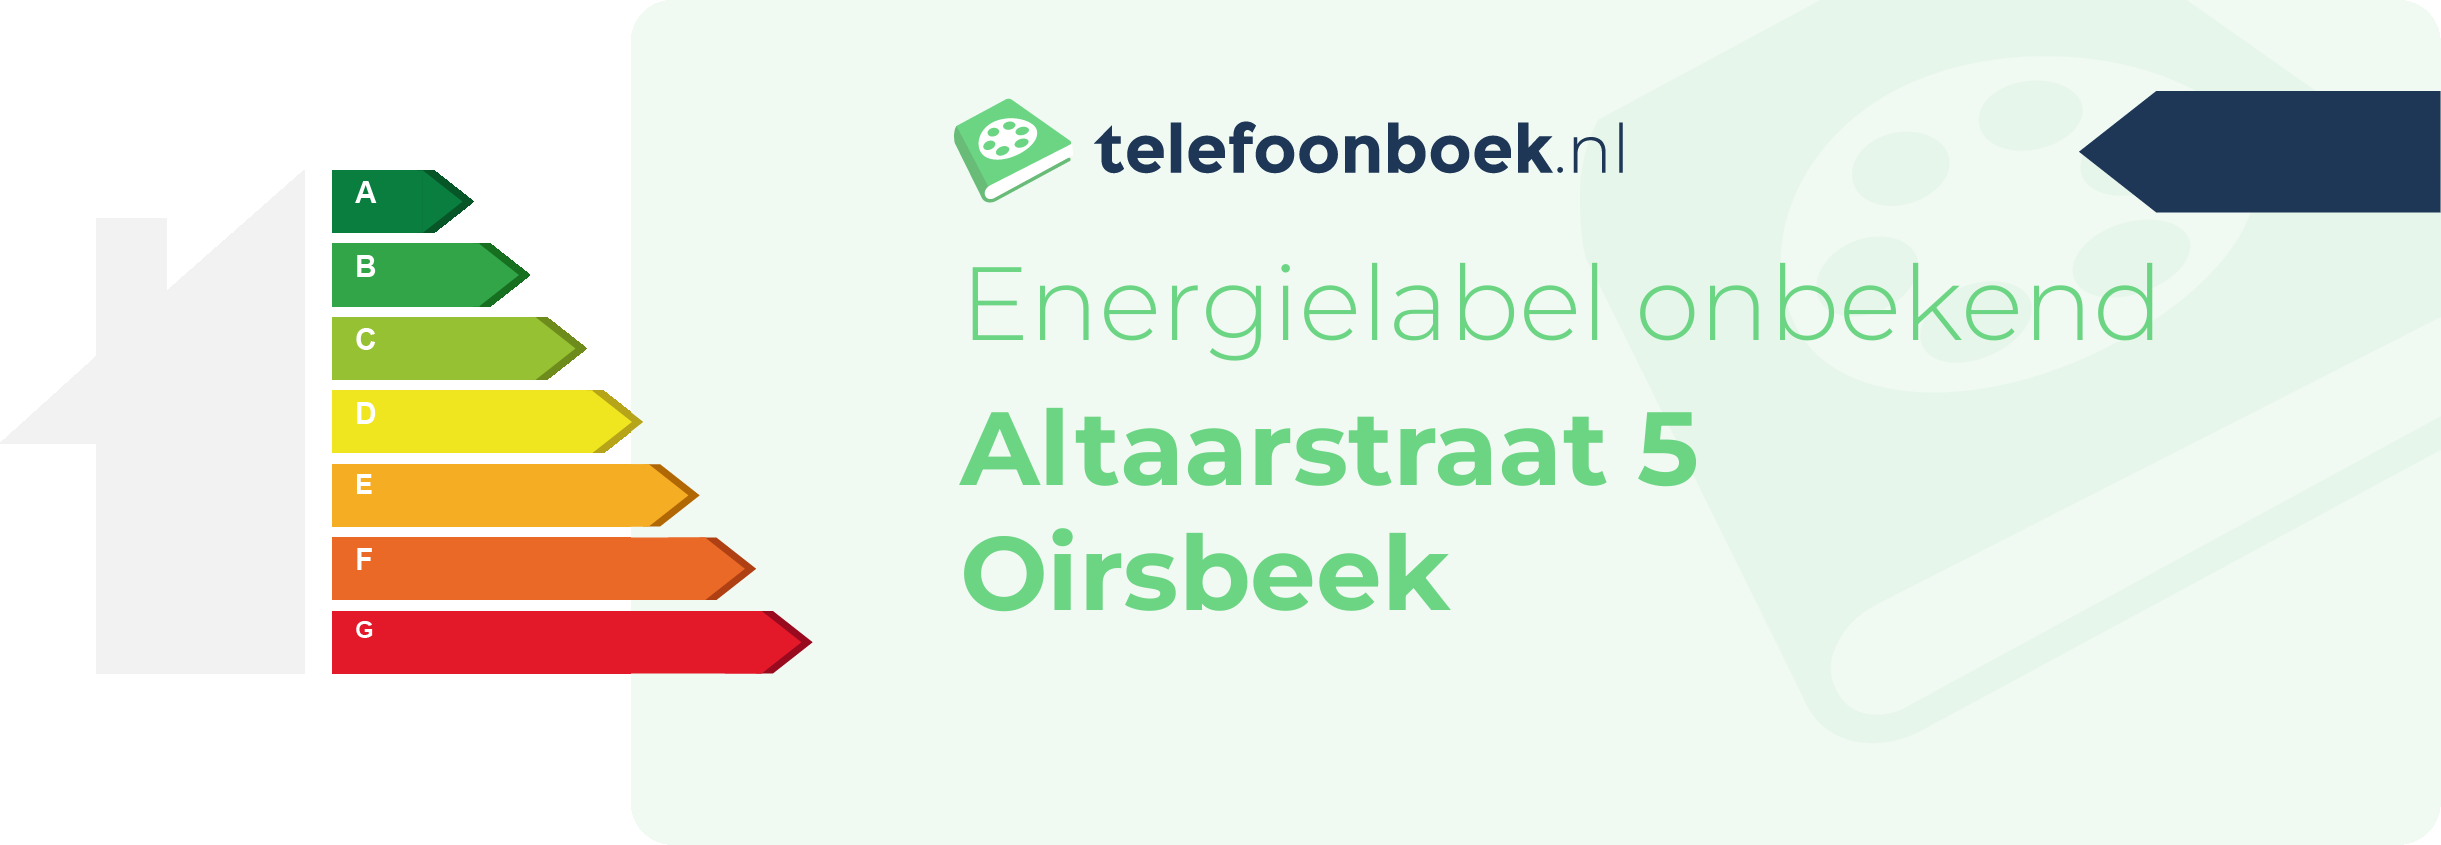 Energielabel Altaarstraat 5 Oirsbeek